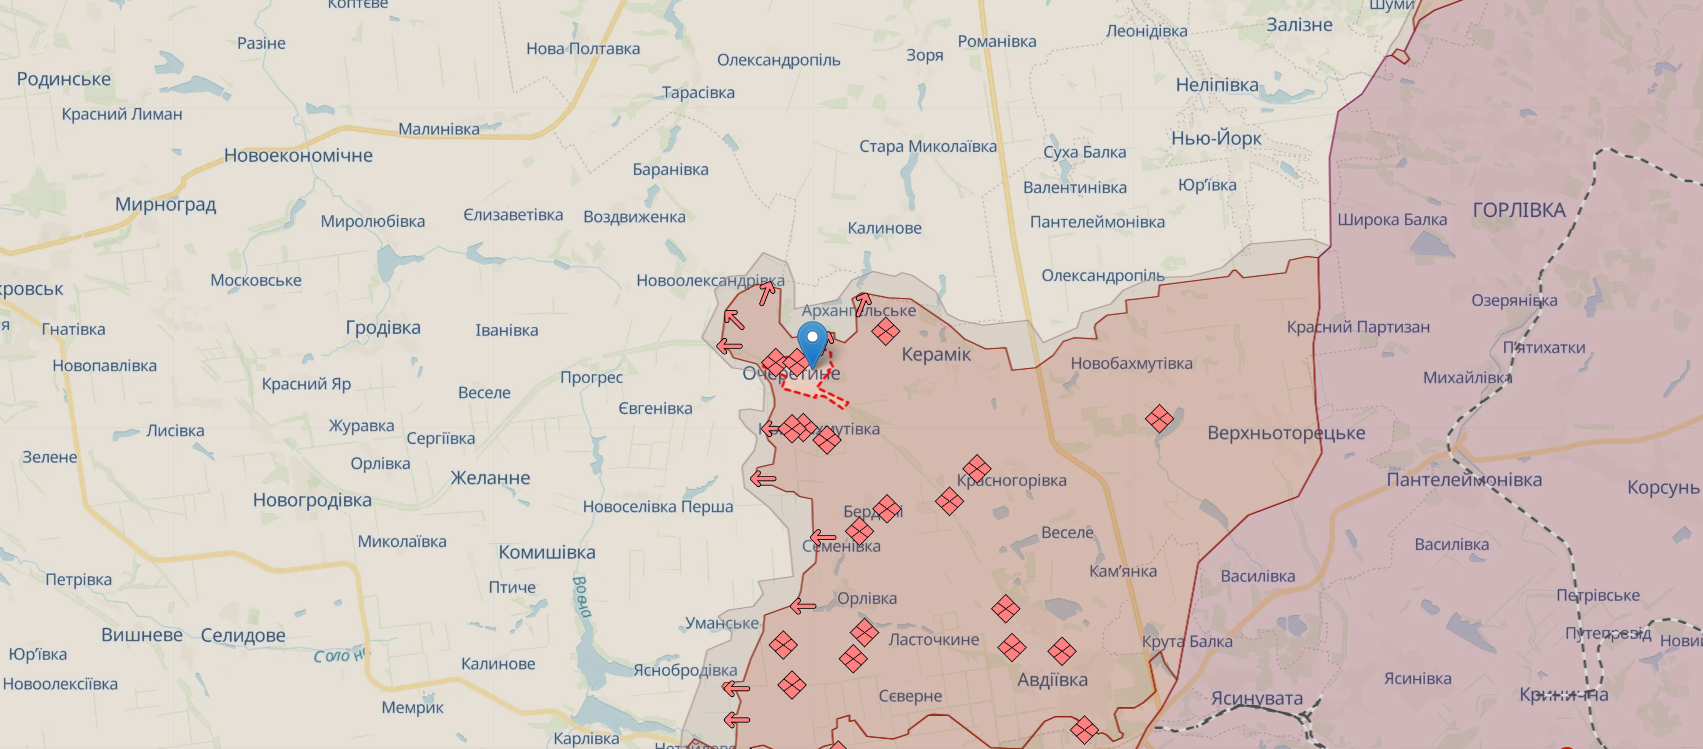 На Харьковском направлении идет бой в районе Старицы, ситуация в Волчанске контролируемая – Генштаб